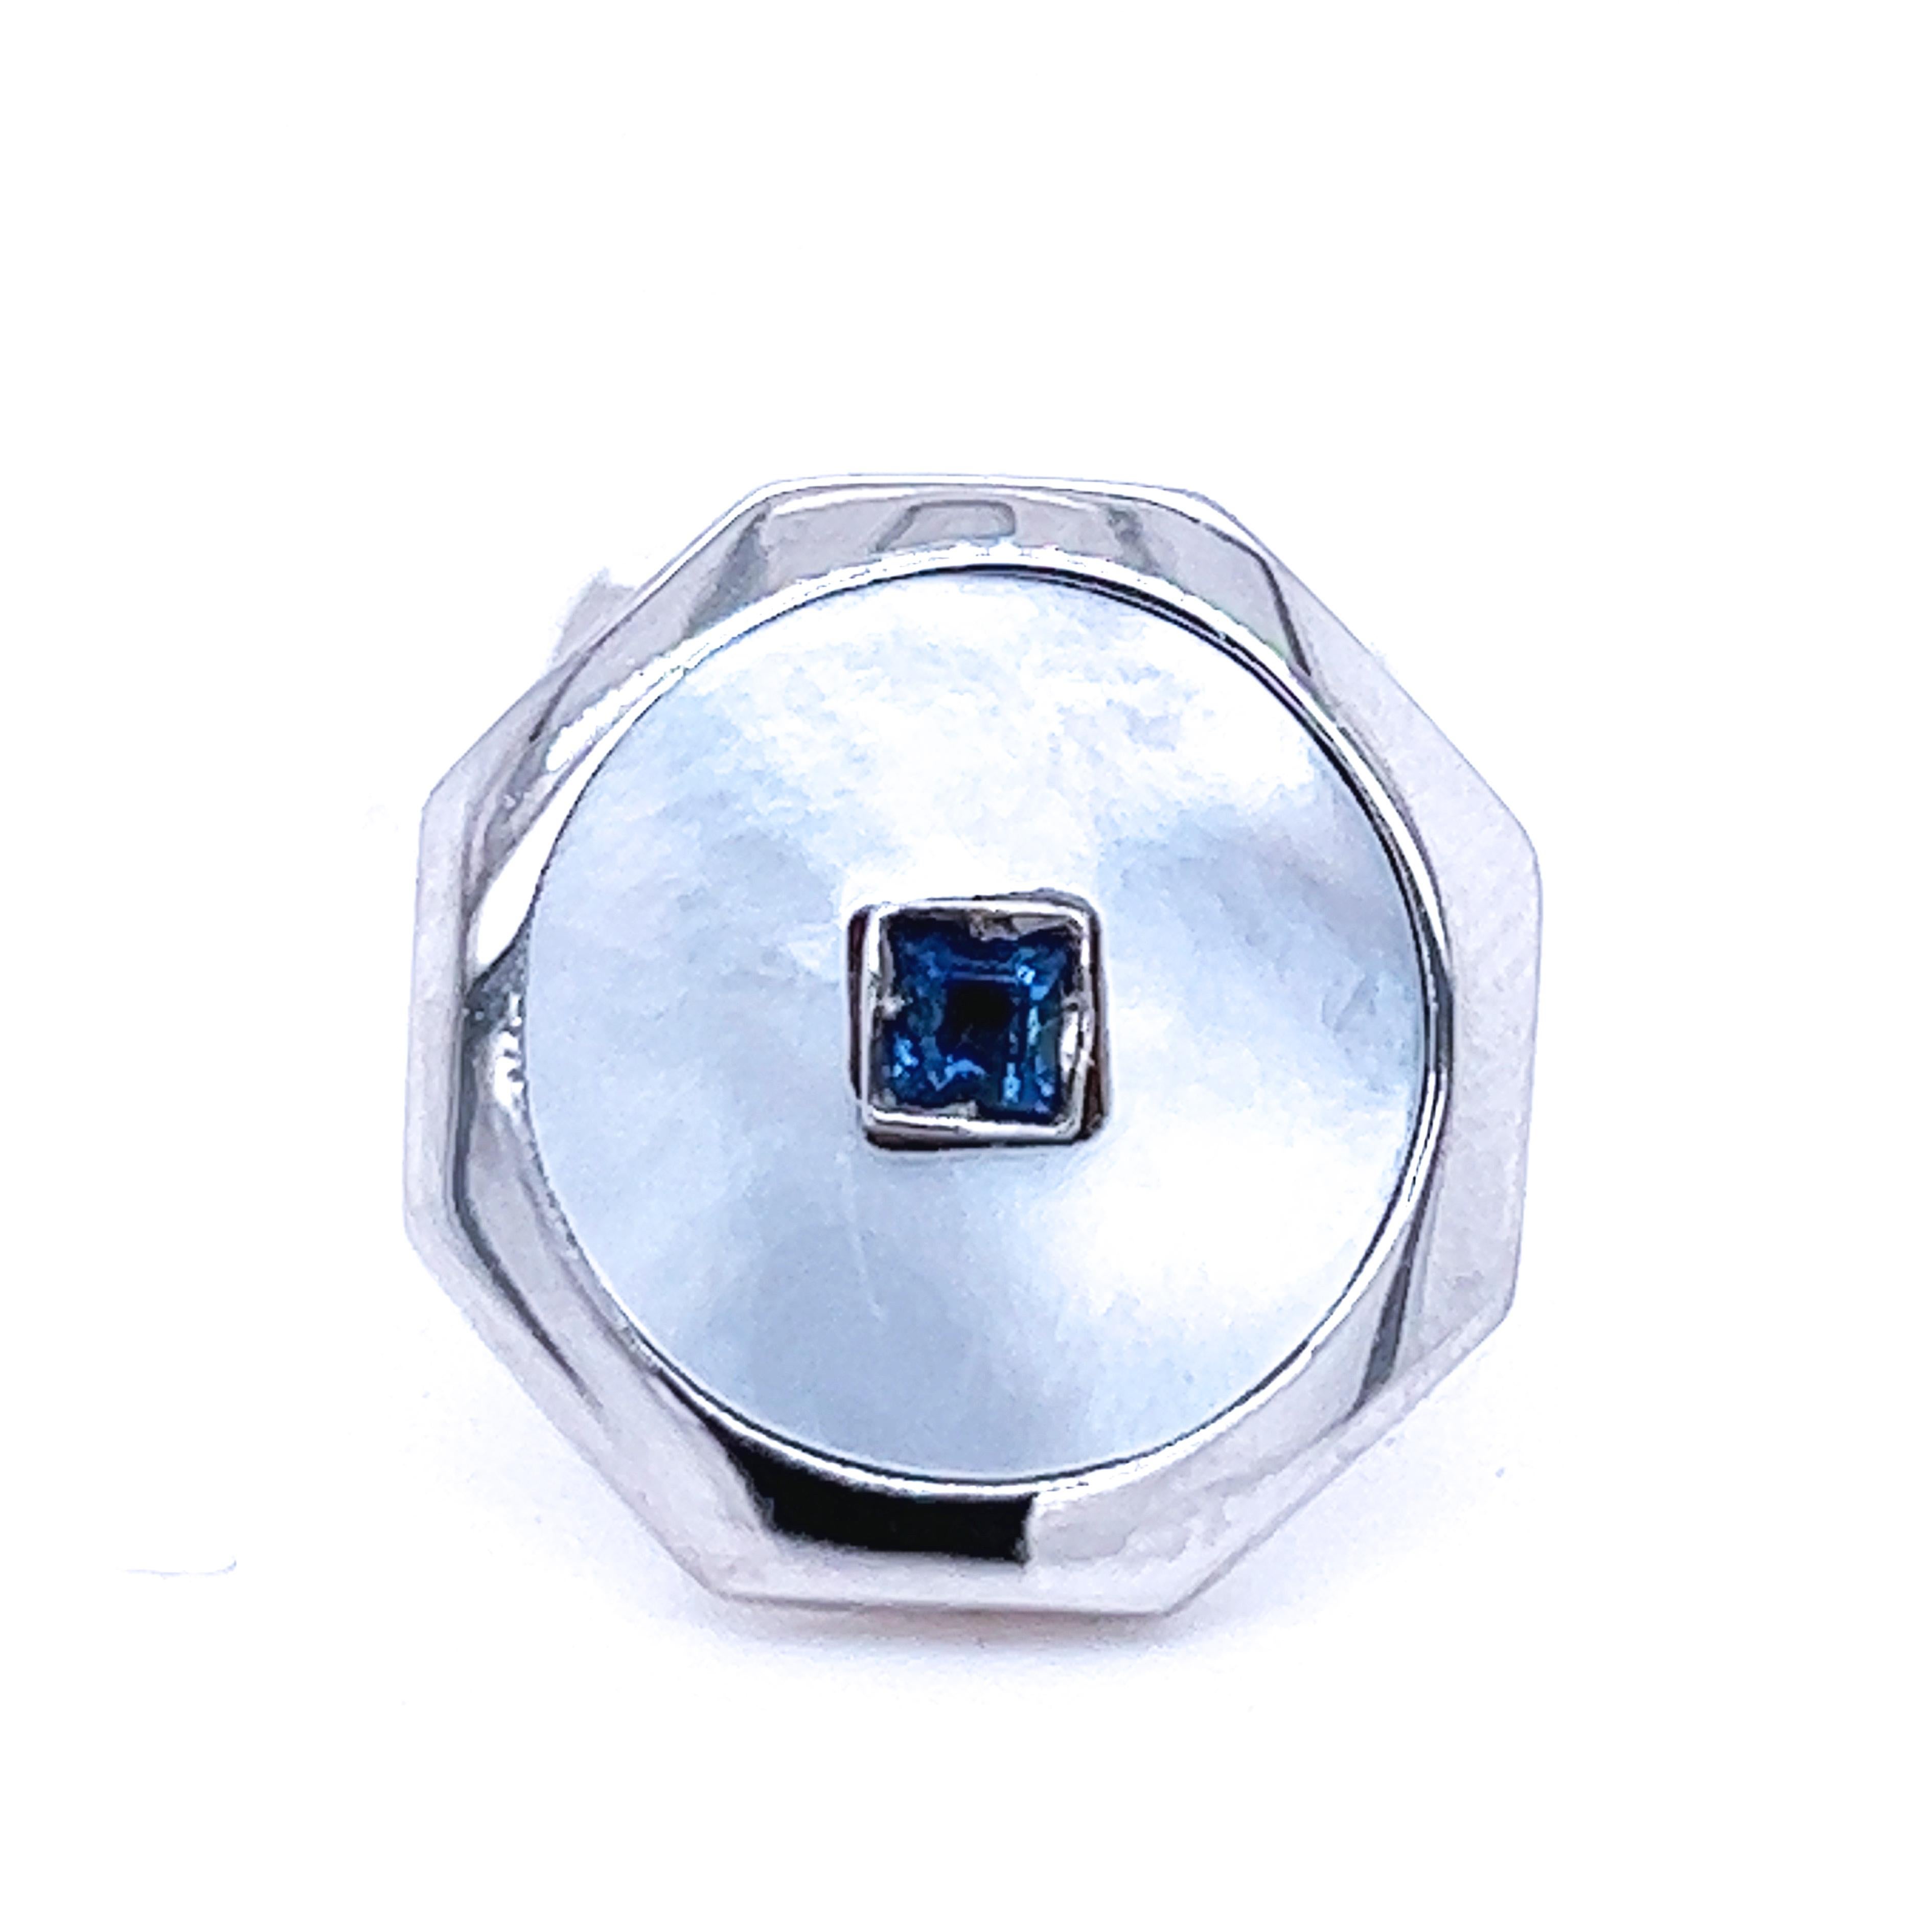 Saphir bleu royal naturel de 0,25 carat de forme carrée, absolument chic et intemporel, dans un disque de nacre émaillé à la main, serti dans une monture octogonale en or blanc,  t-bar arrière.
Dans notre élégant coffret et notre pochette en cuir